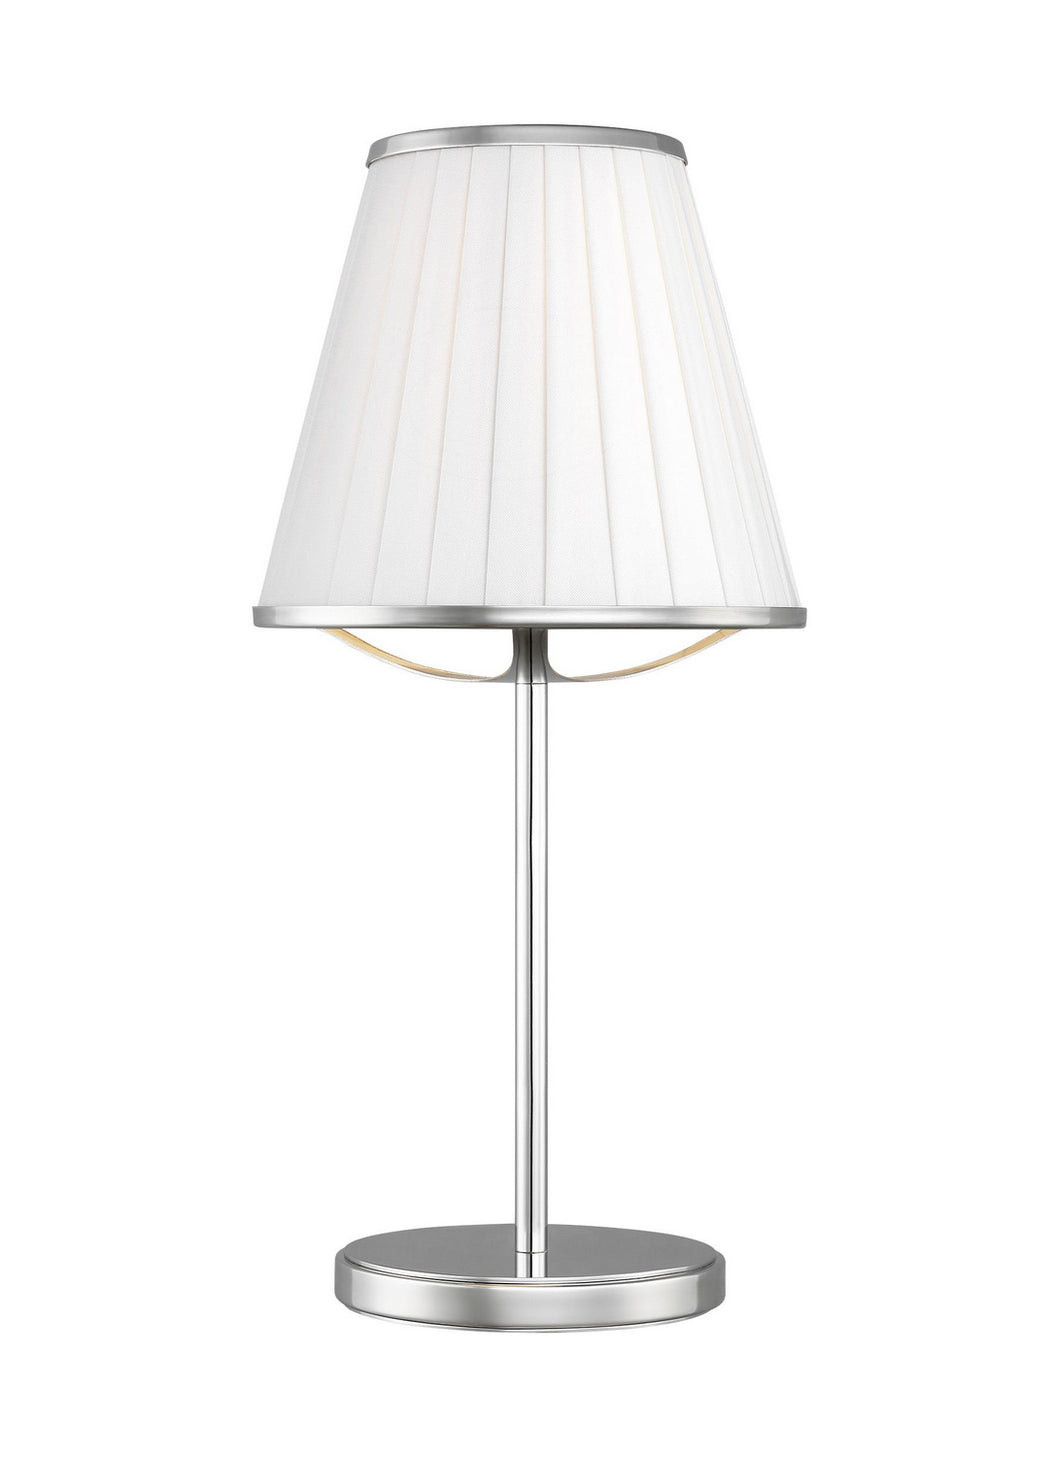 Generation Lighting - LT1131PN1 - One Light Table Lamp - Esther